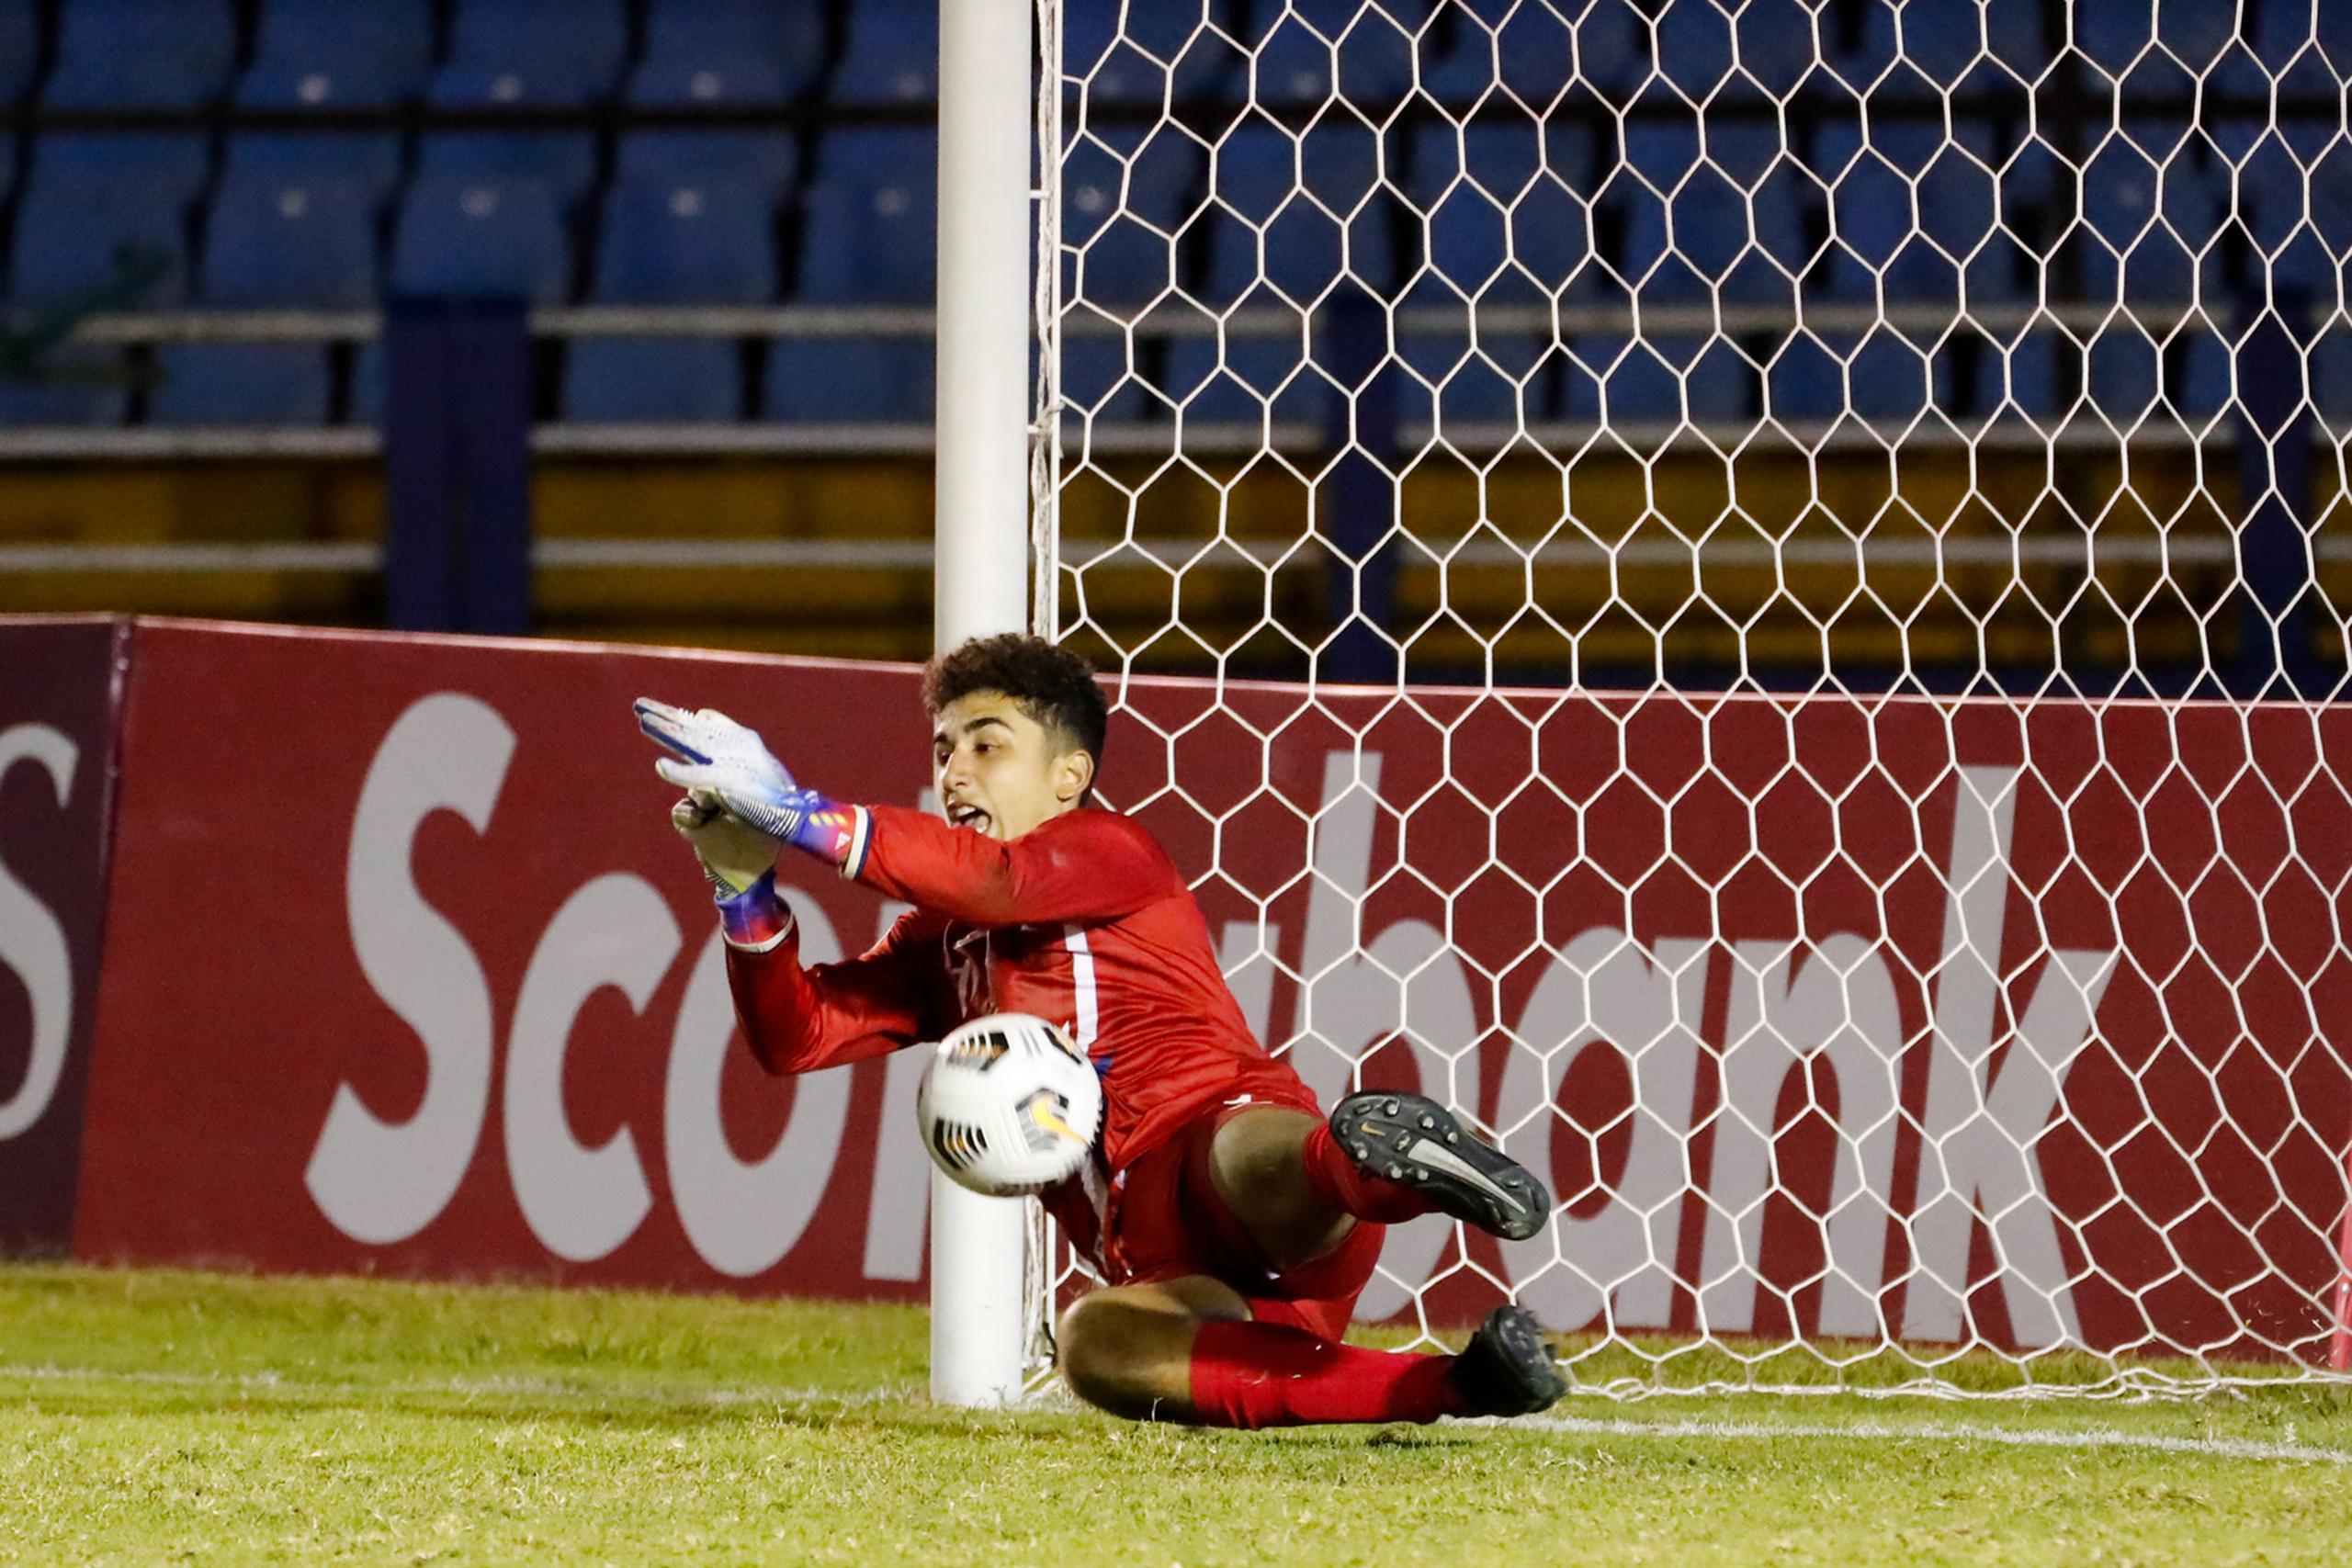 El portero Sebastián Cuevas y el Equipo Nacional masculino de fútbol de Puerto Rico fueron derrotados el miércoles por Canadá en los cuartos de final del Campeonato Sub 17 de la Concacaf.